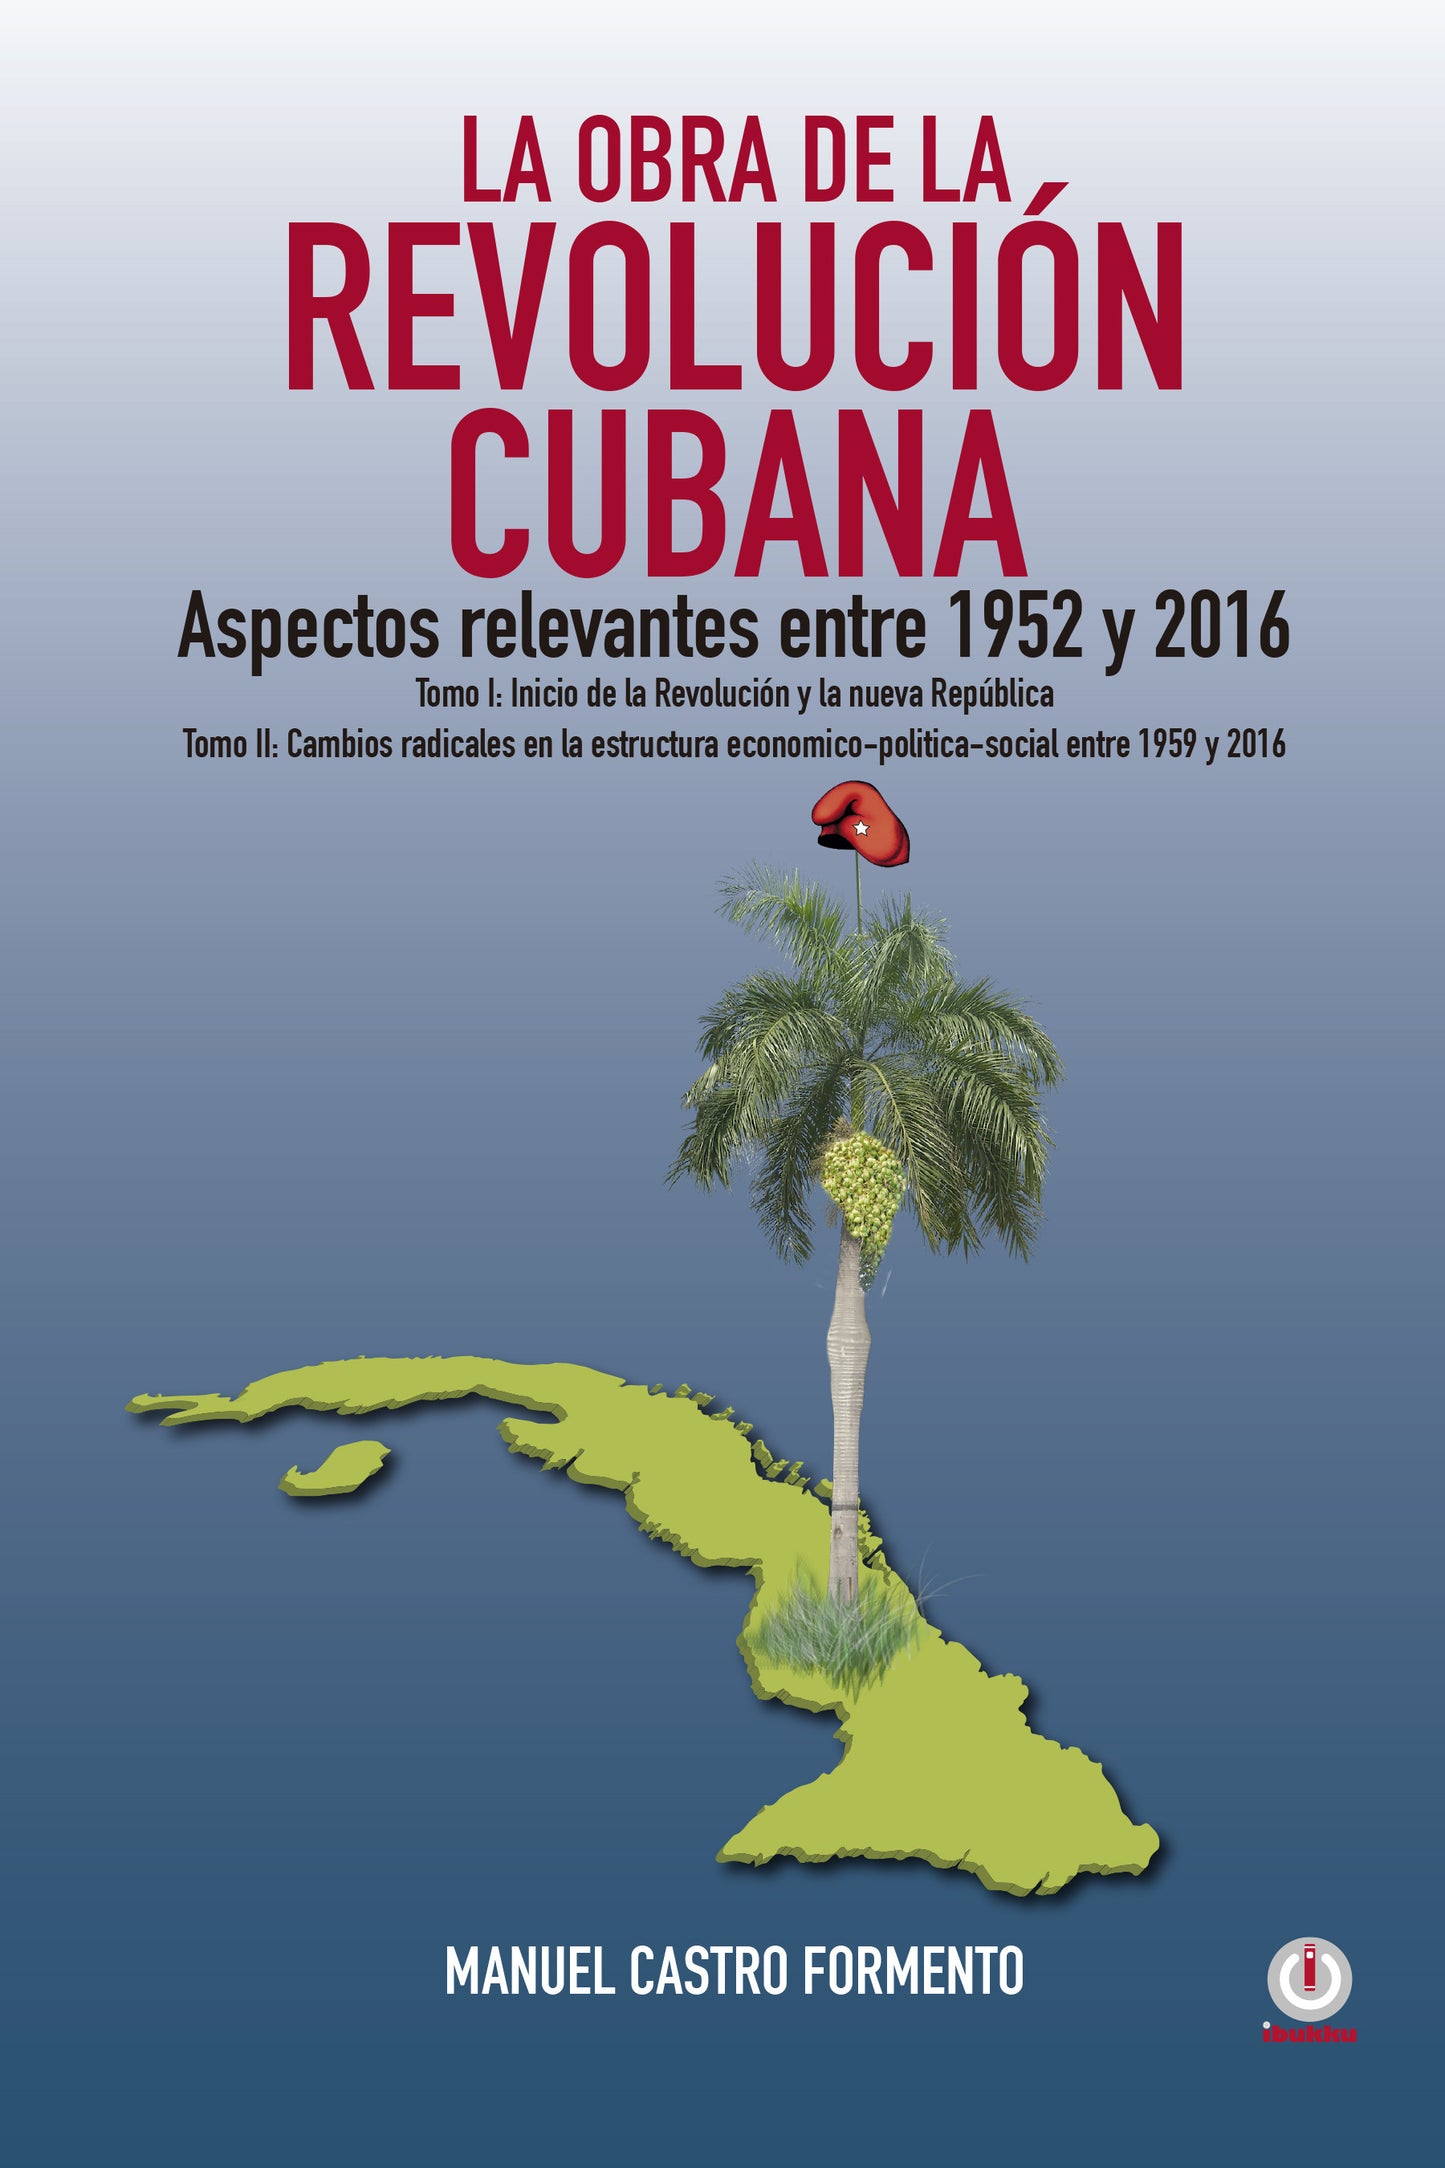 La obra de la revolución cubana: Aspectos relevantes entre 1952 y 2016 (Tomos I y II) - ibukku, LLC